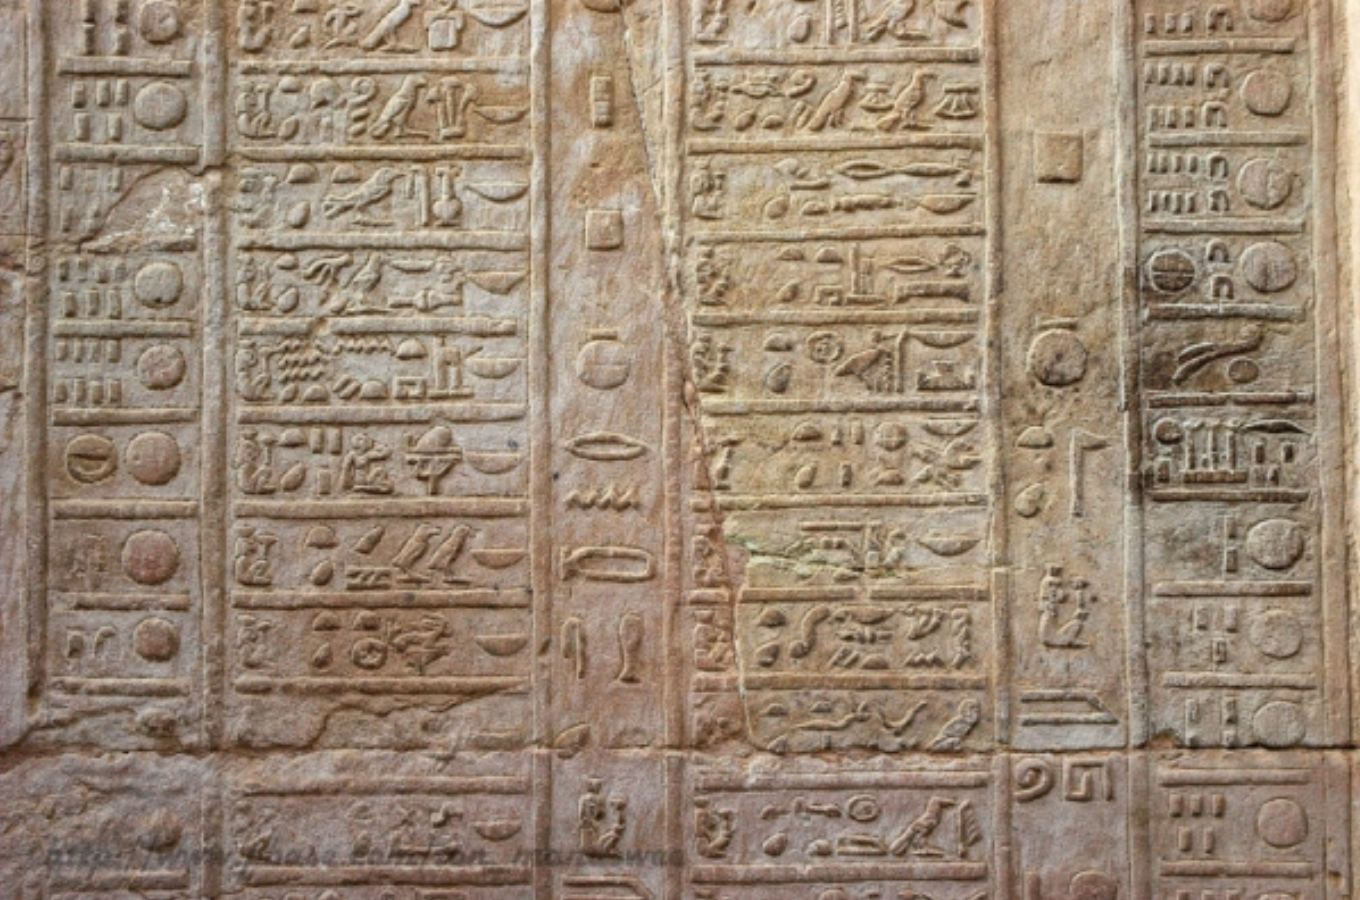 Αρχαίο αιγυπτιακό ημερολόγιο